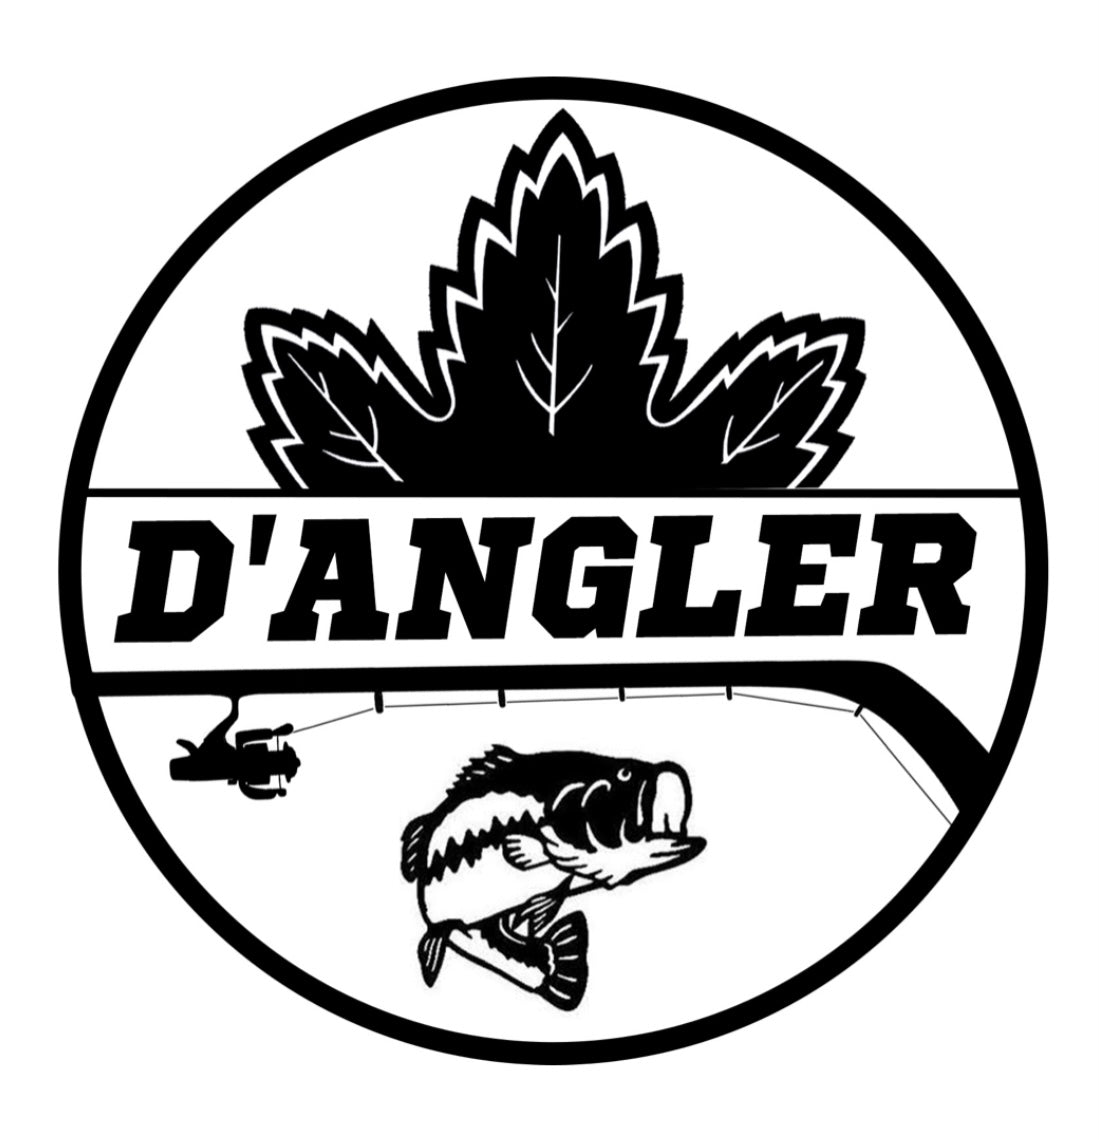 Dangler Ice Fishing  The Dangler - Reel 'Em In!